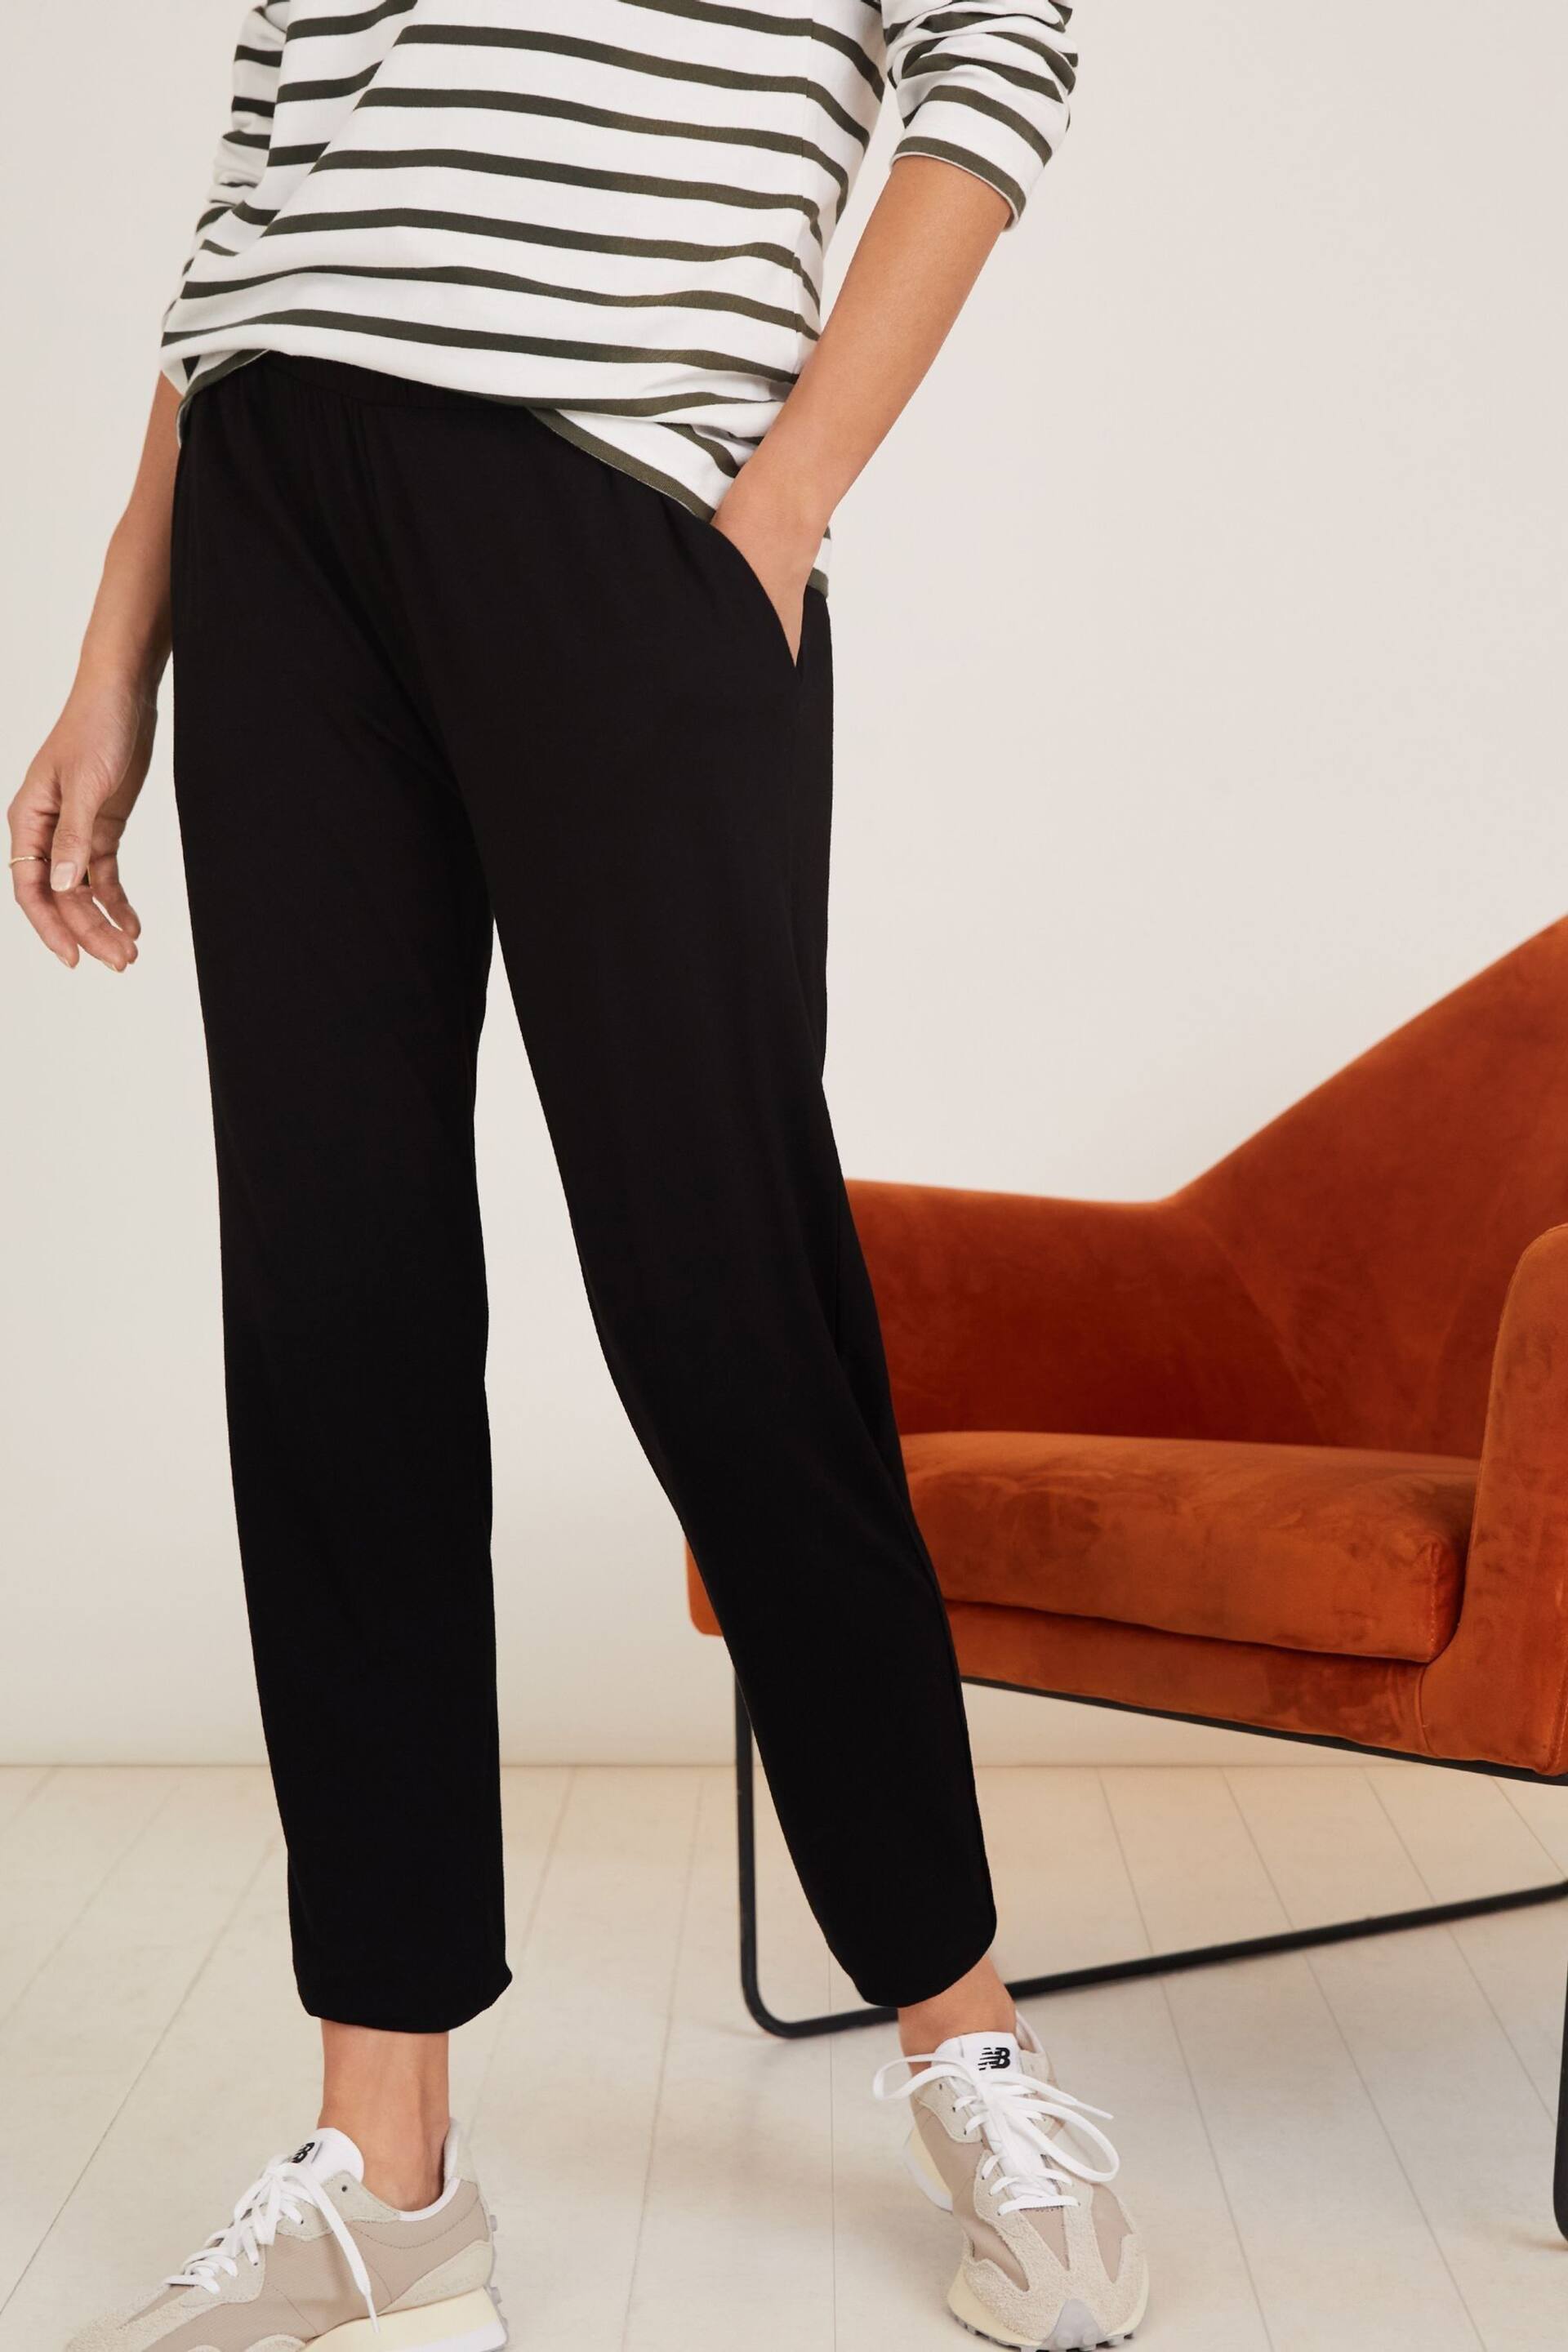 Baukjen Neath Black Trousers with Lenzing™ Ecovero™ - Image 3 of 4